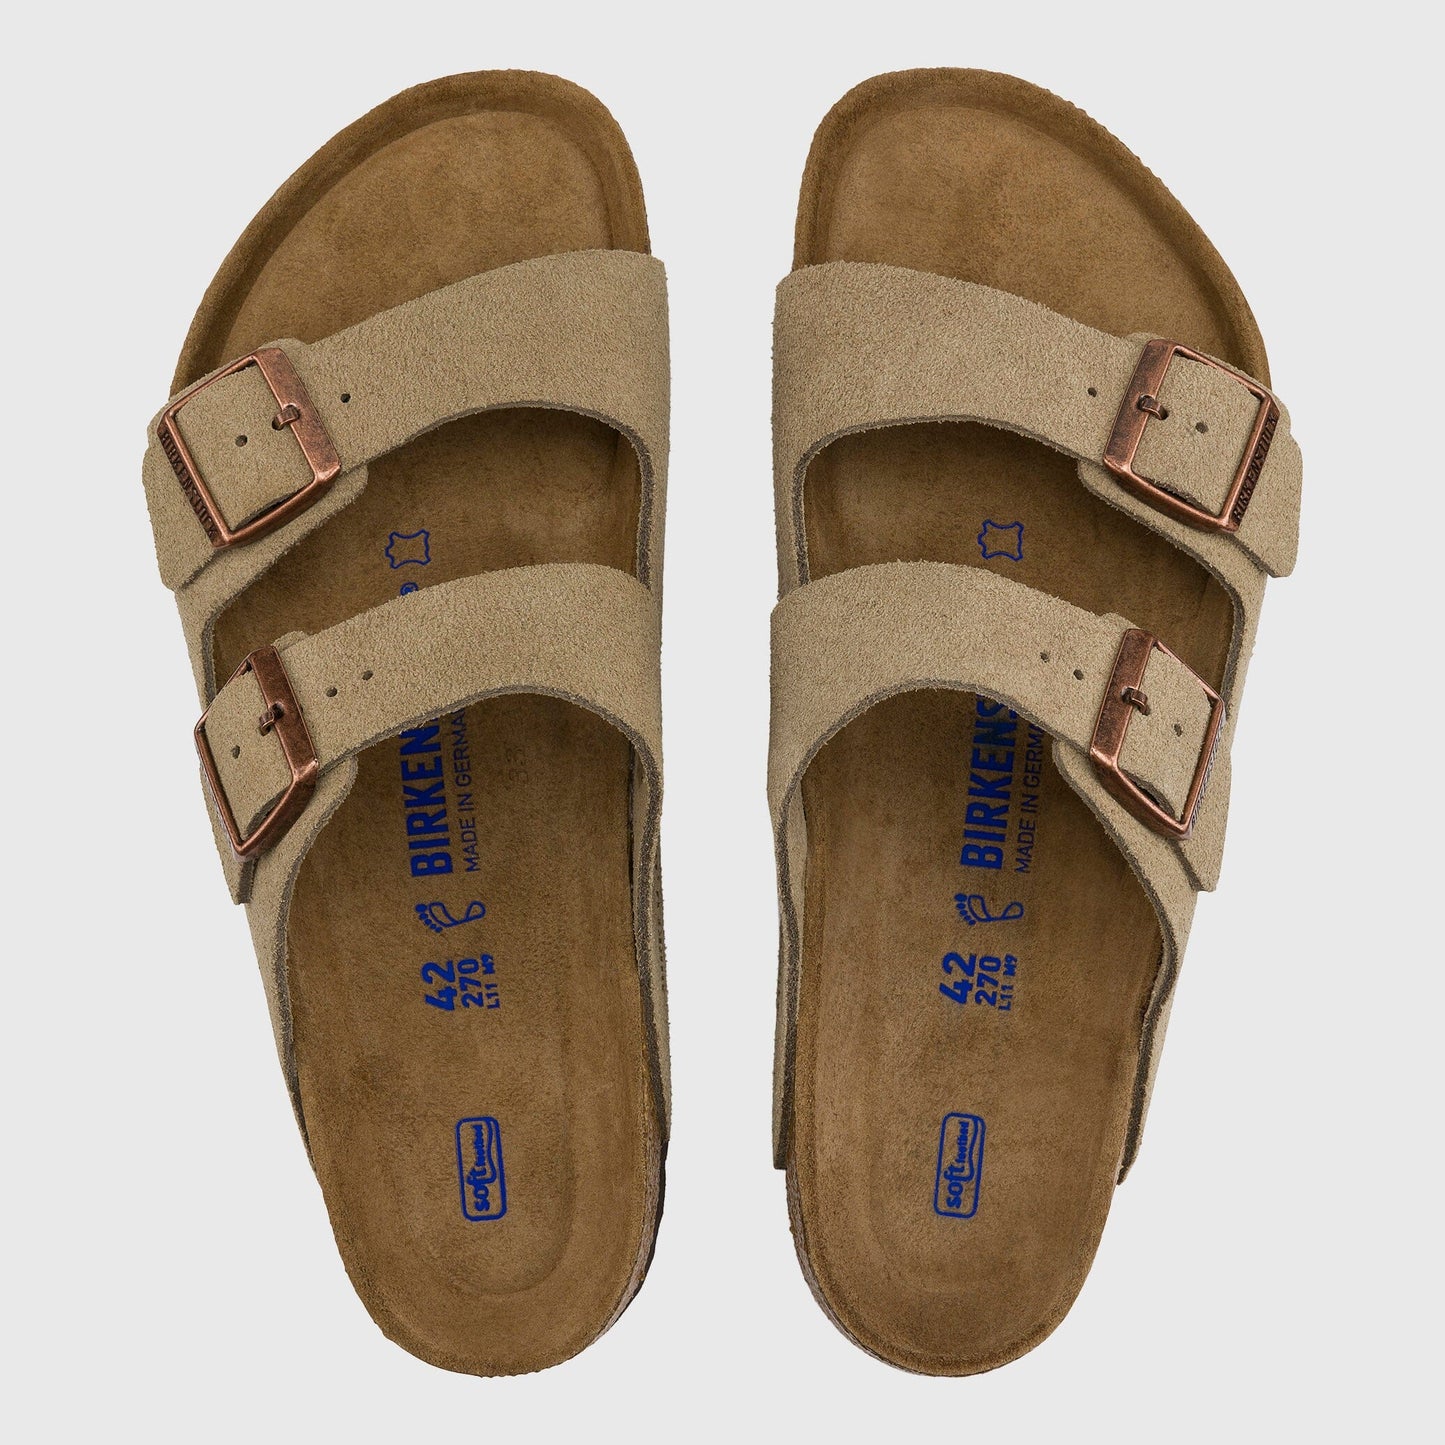 Birkenstock Arizona Sandal Suede - Taupe Sandals Birkenstock 